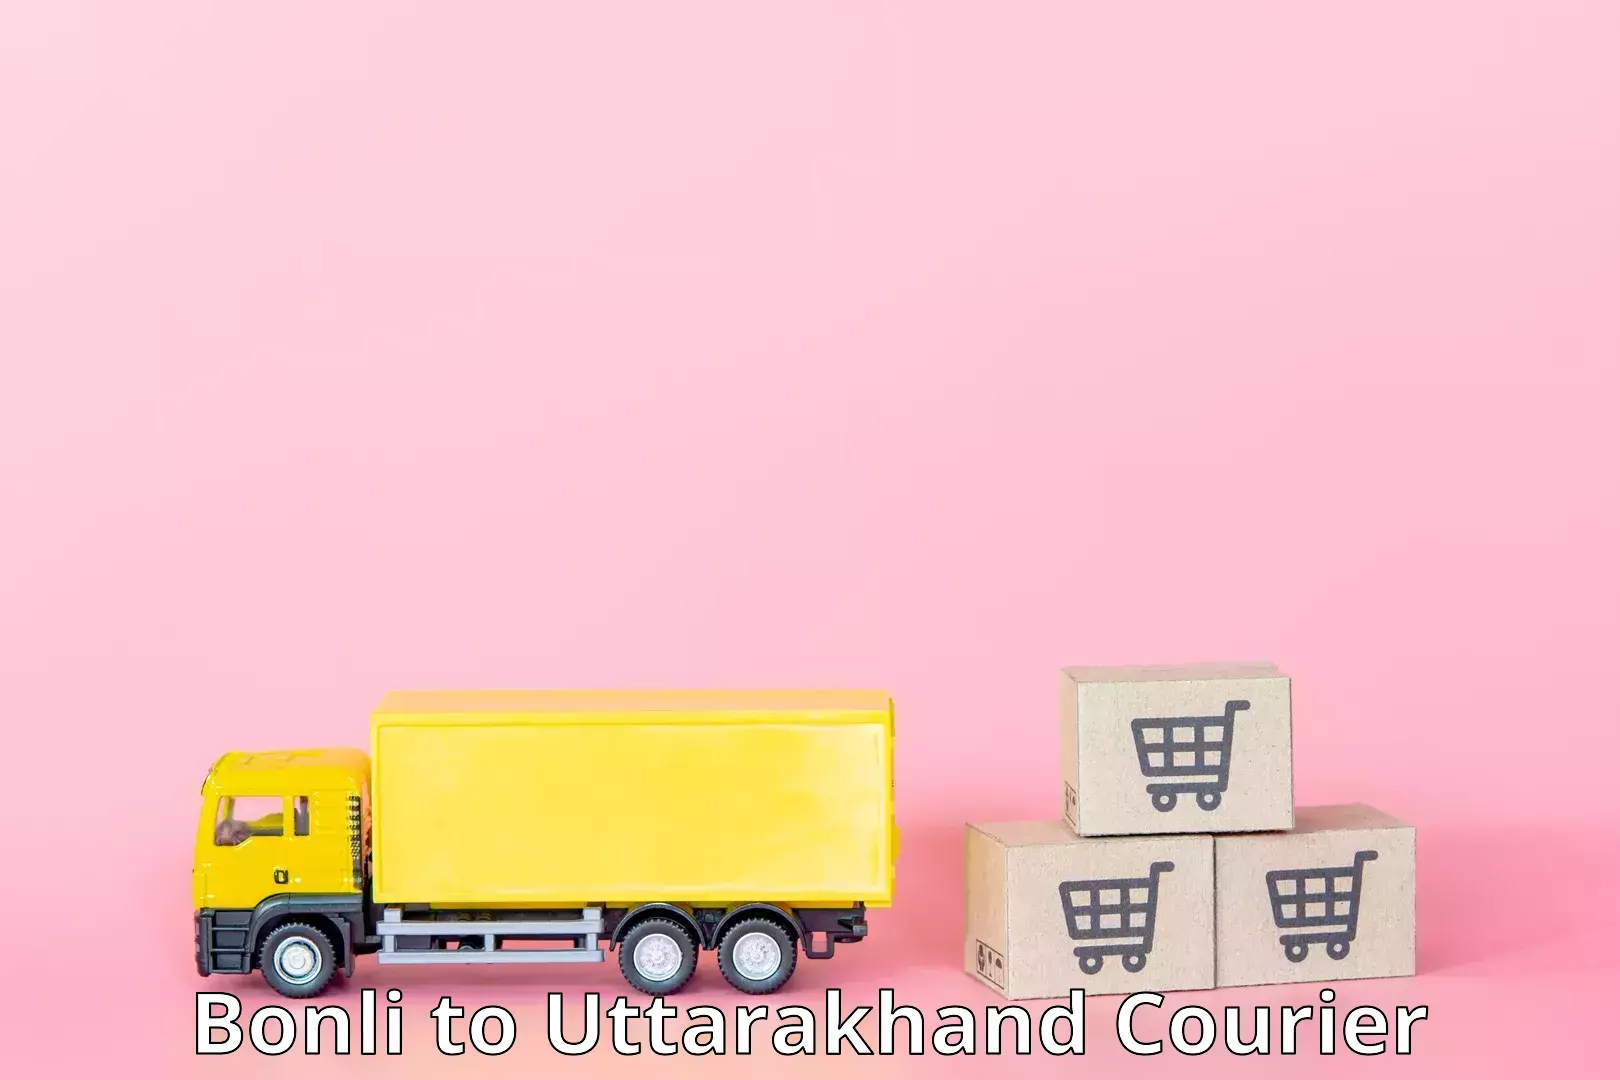 Supply chain efficiency Bonli to Uttarkashi